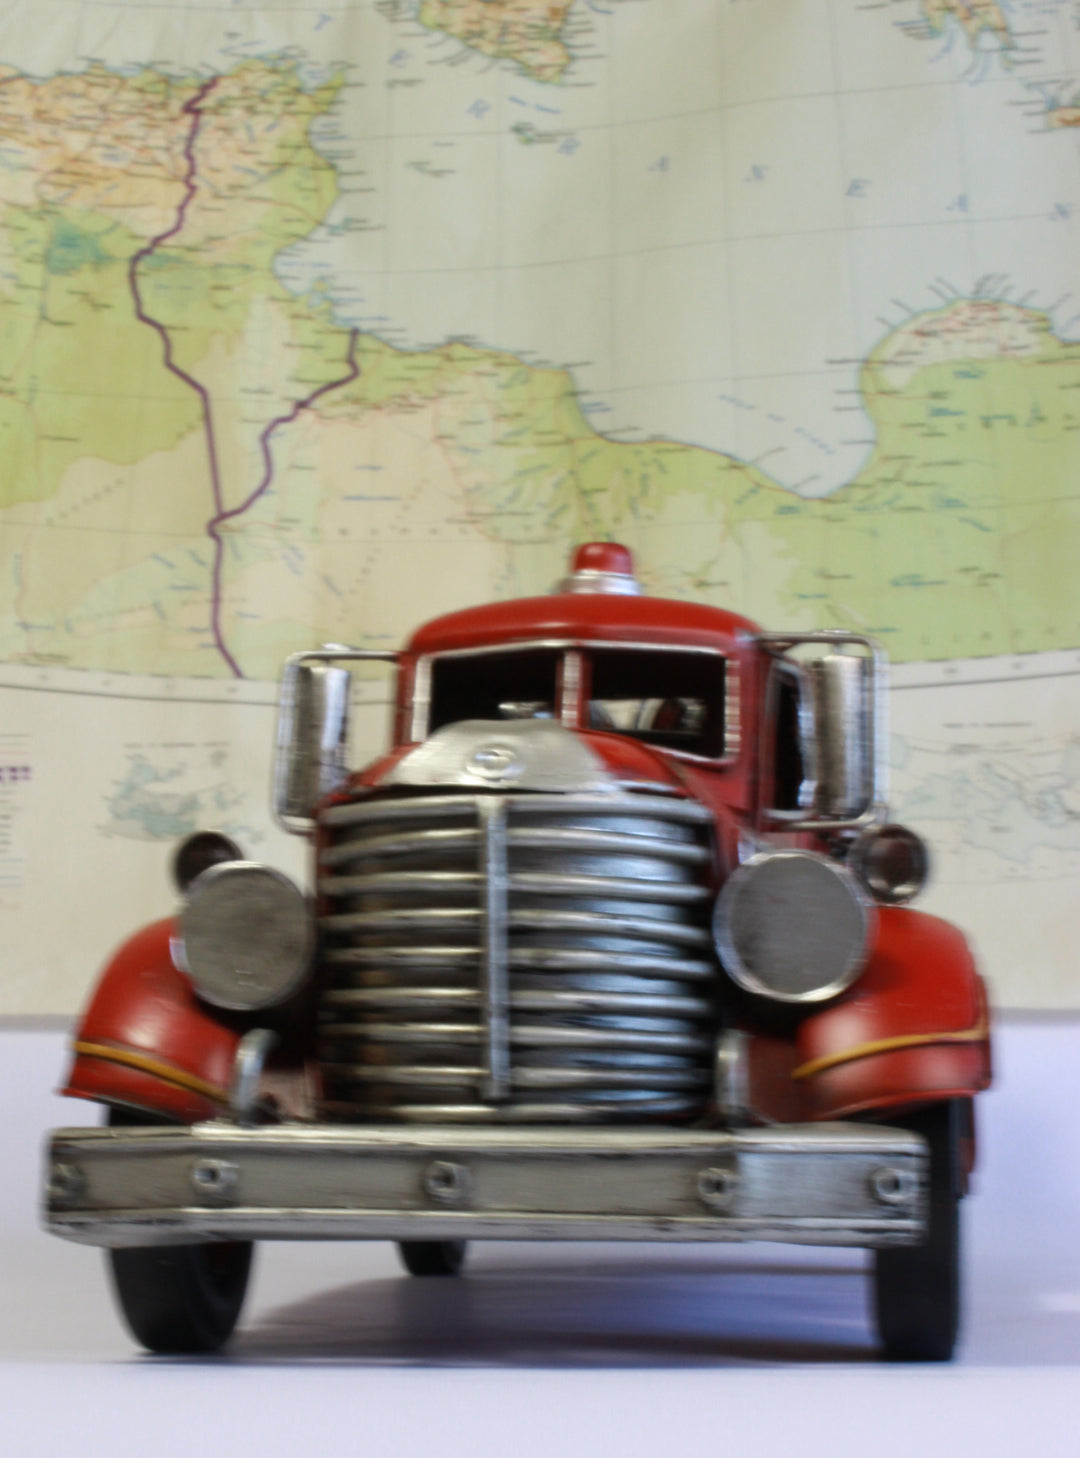 Fire Truck Model - Vintage Fire Engine - Retro American Fire Truck